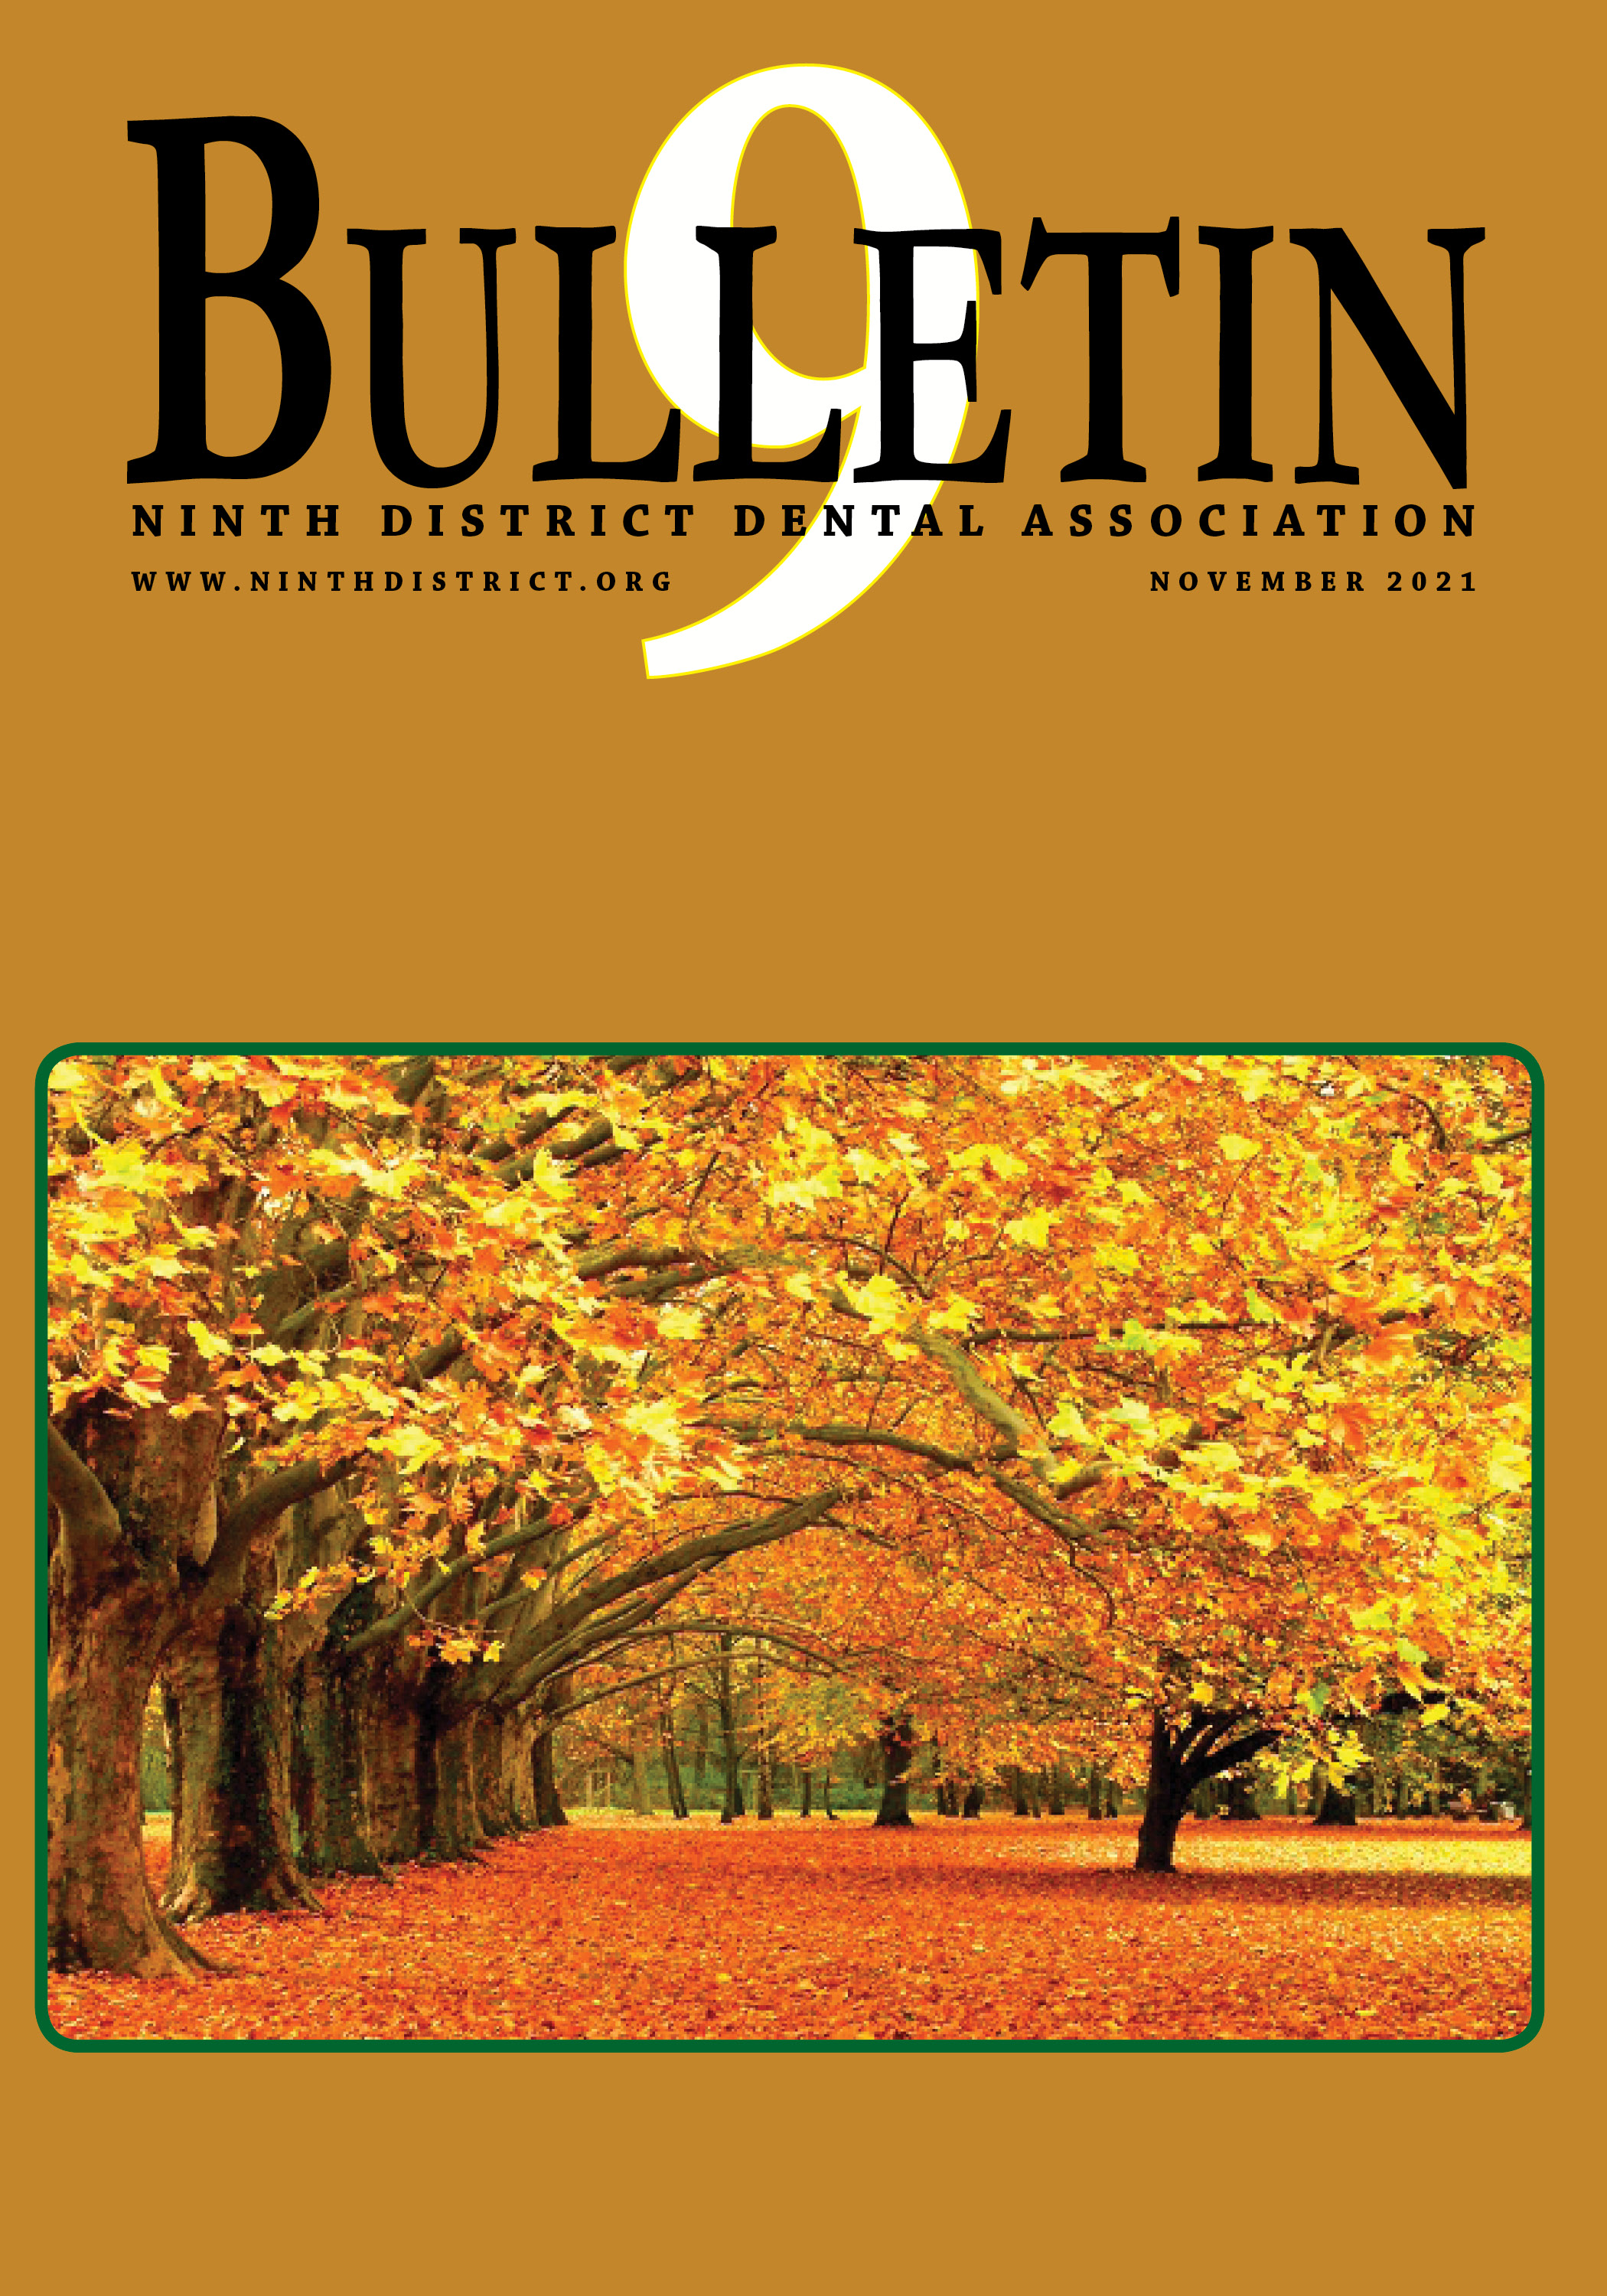 November 2021 Bulletin cover